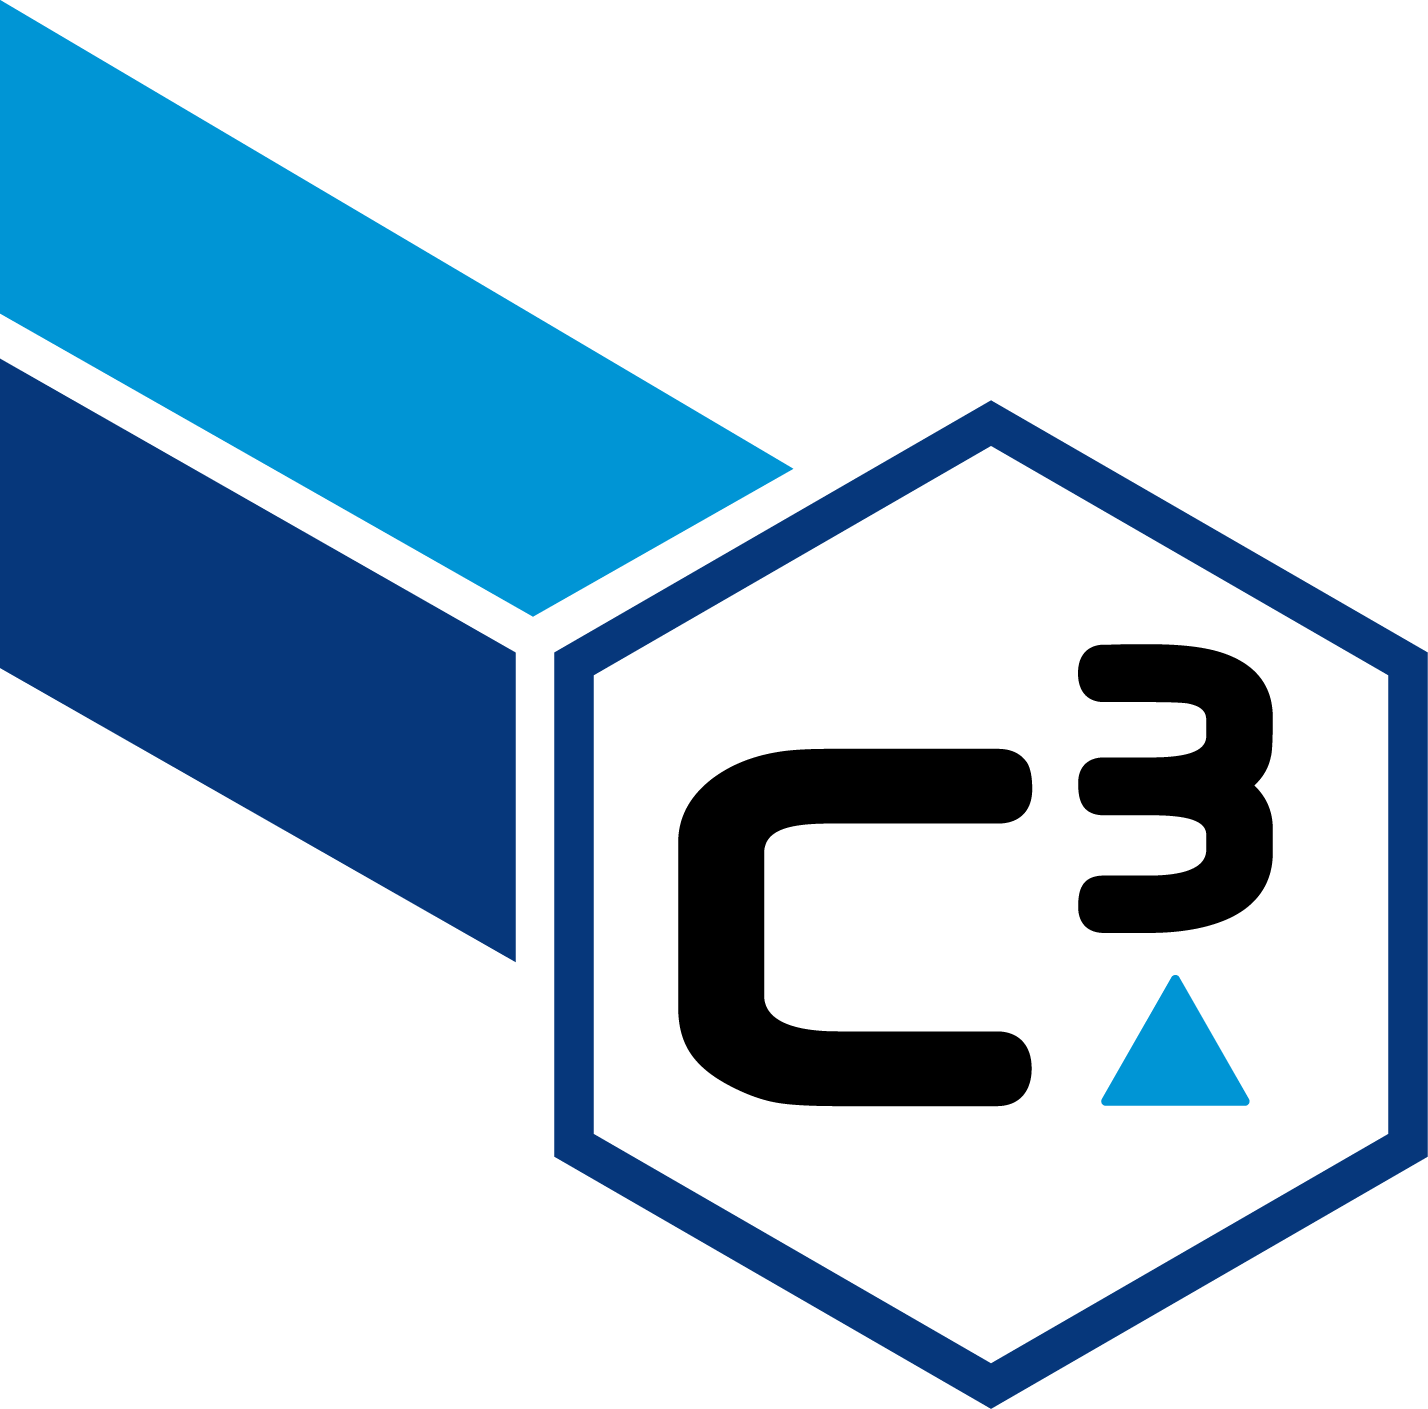 C a limited. Логотип 3. Докет. Докет 3.0. C03 logo.